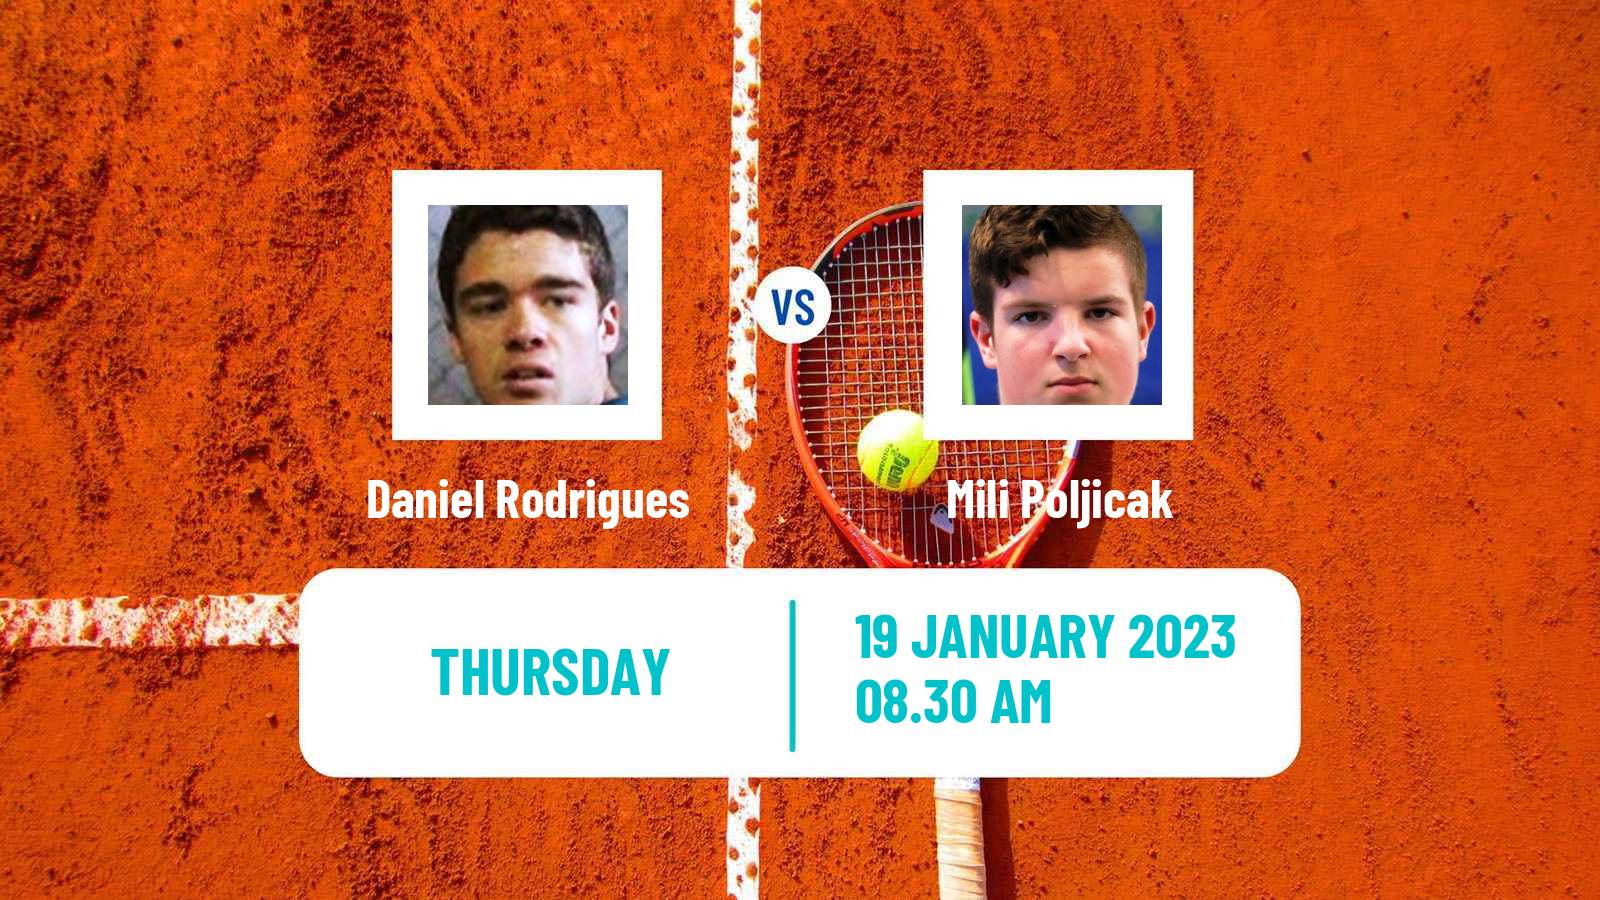 Tennis ITF Tournaments Daniel Rodrigues - Mili Poljicak